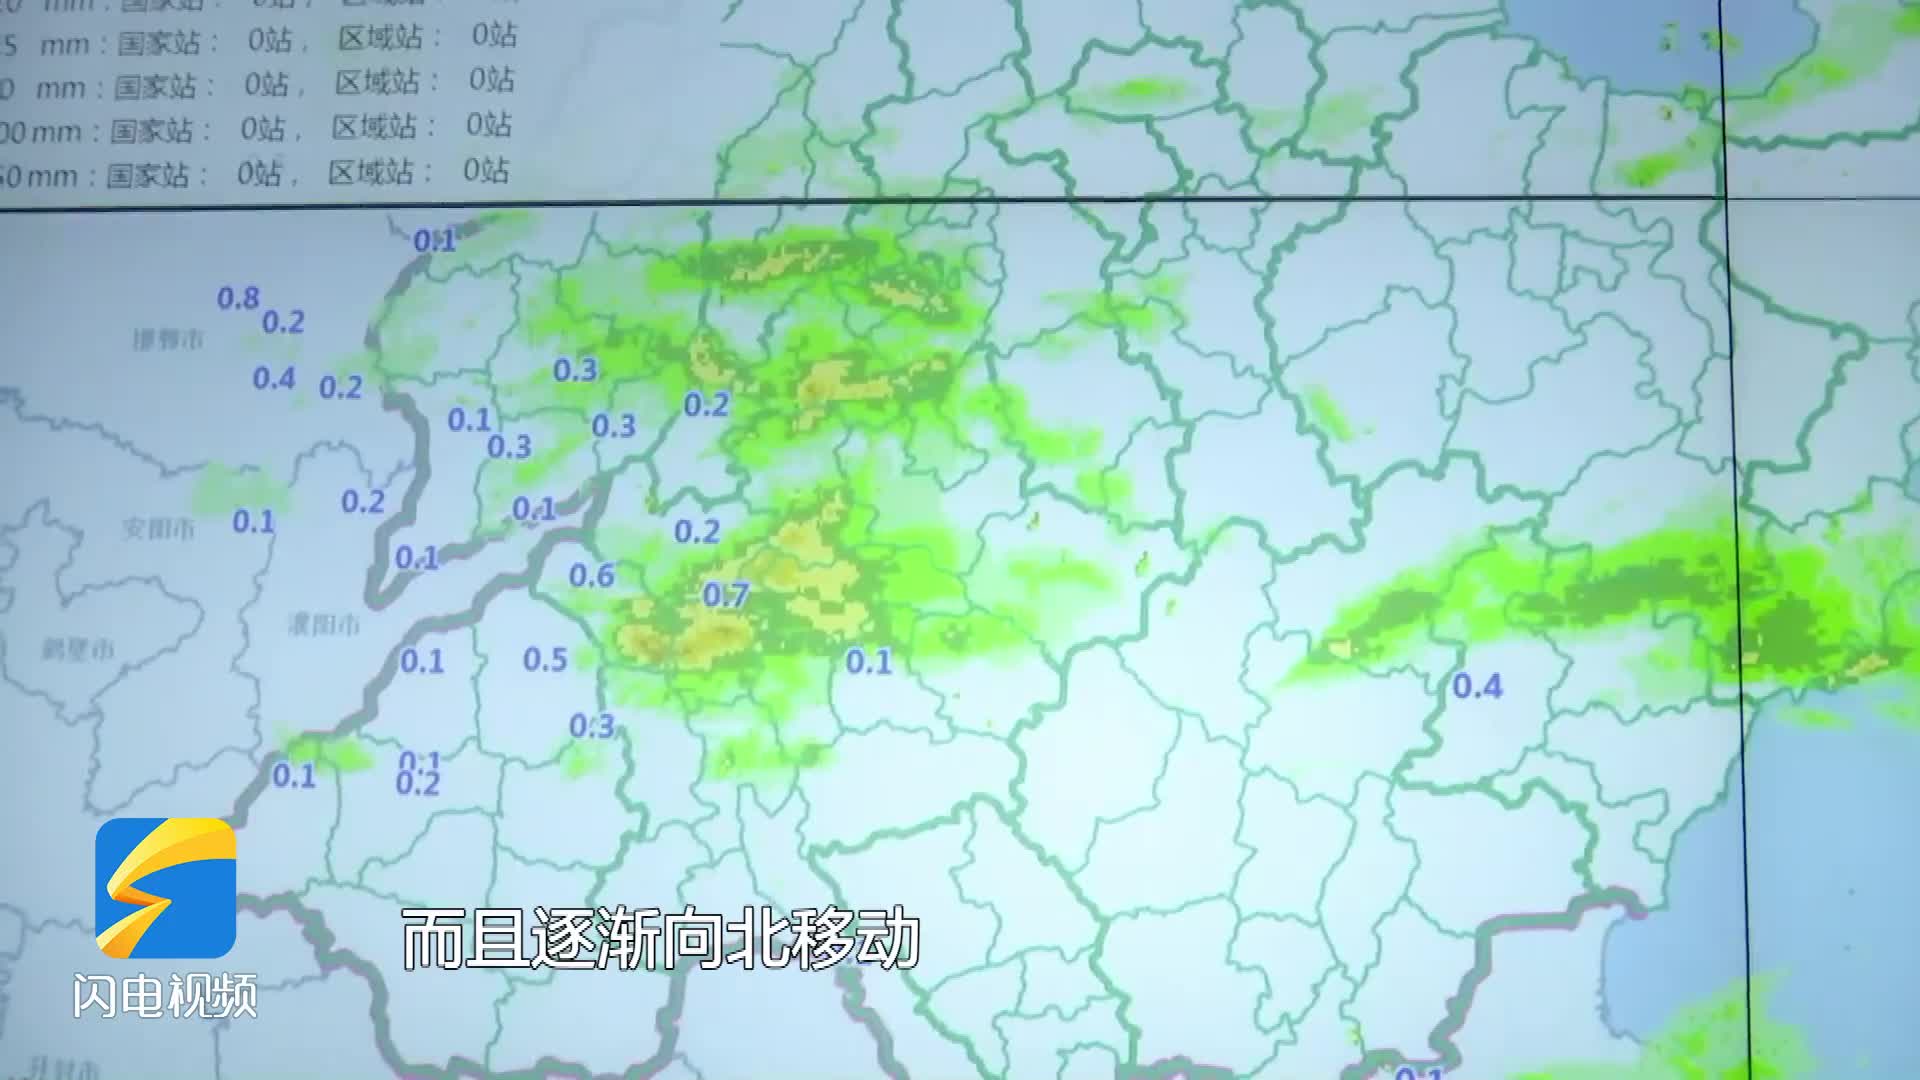 降雪今夜将至 菏泽、济宁、烟台等地中到大雪局部暴雪